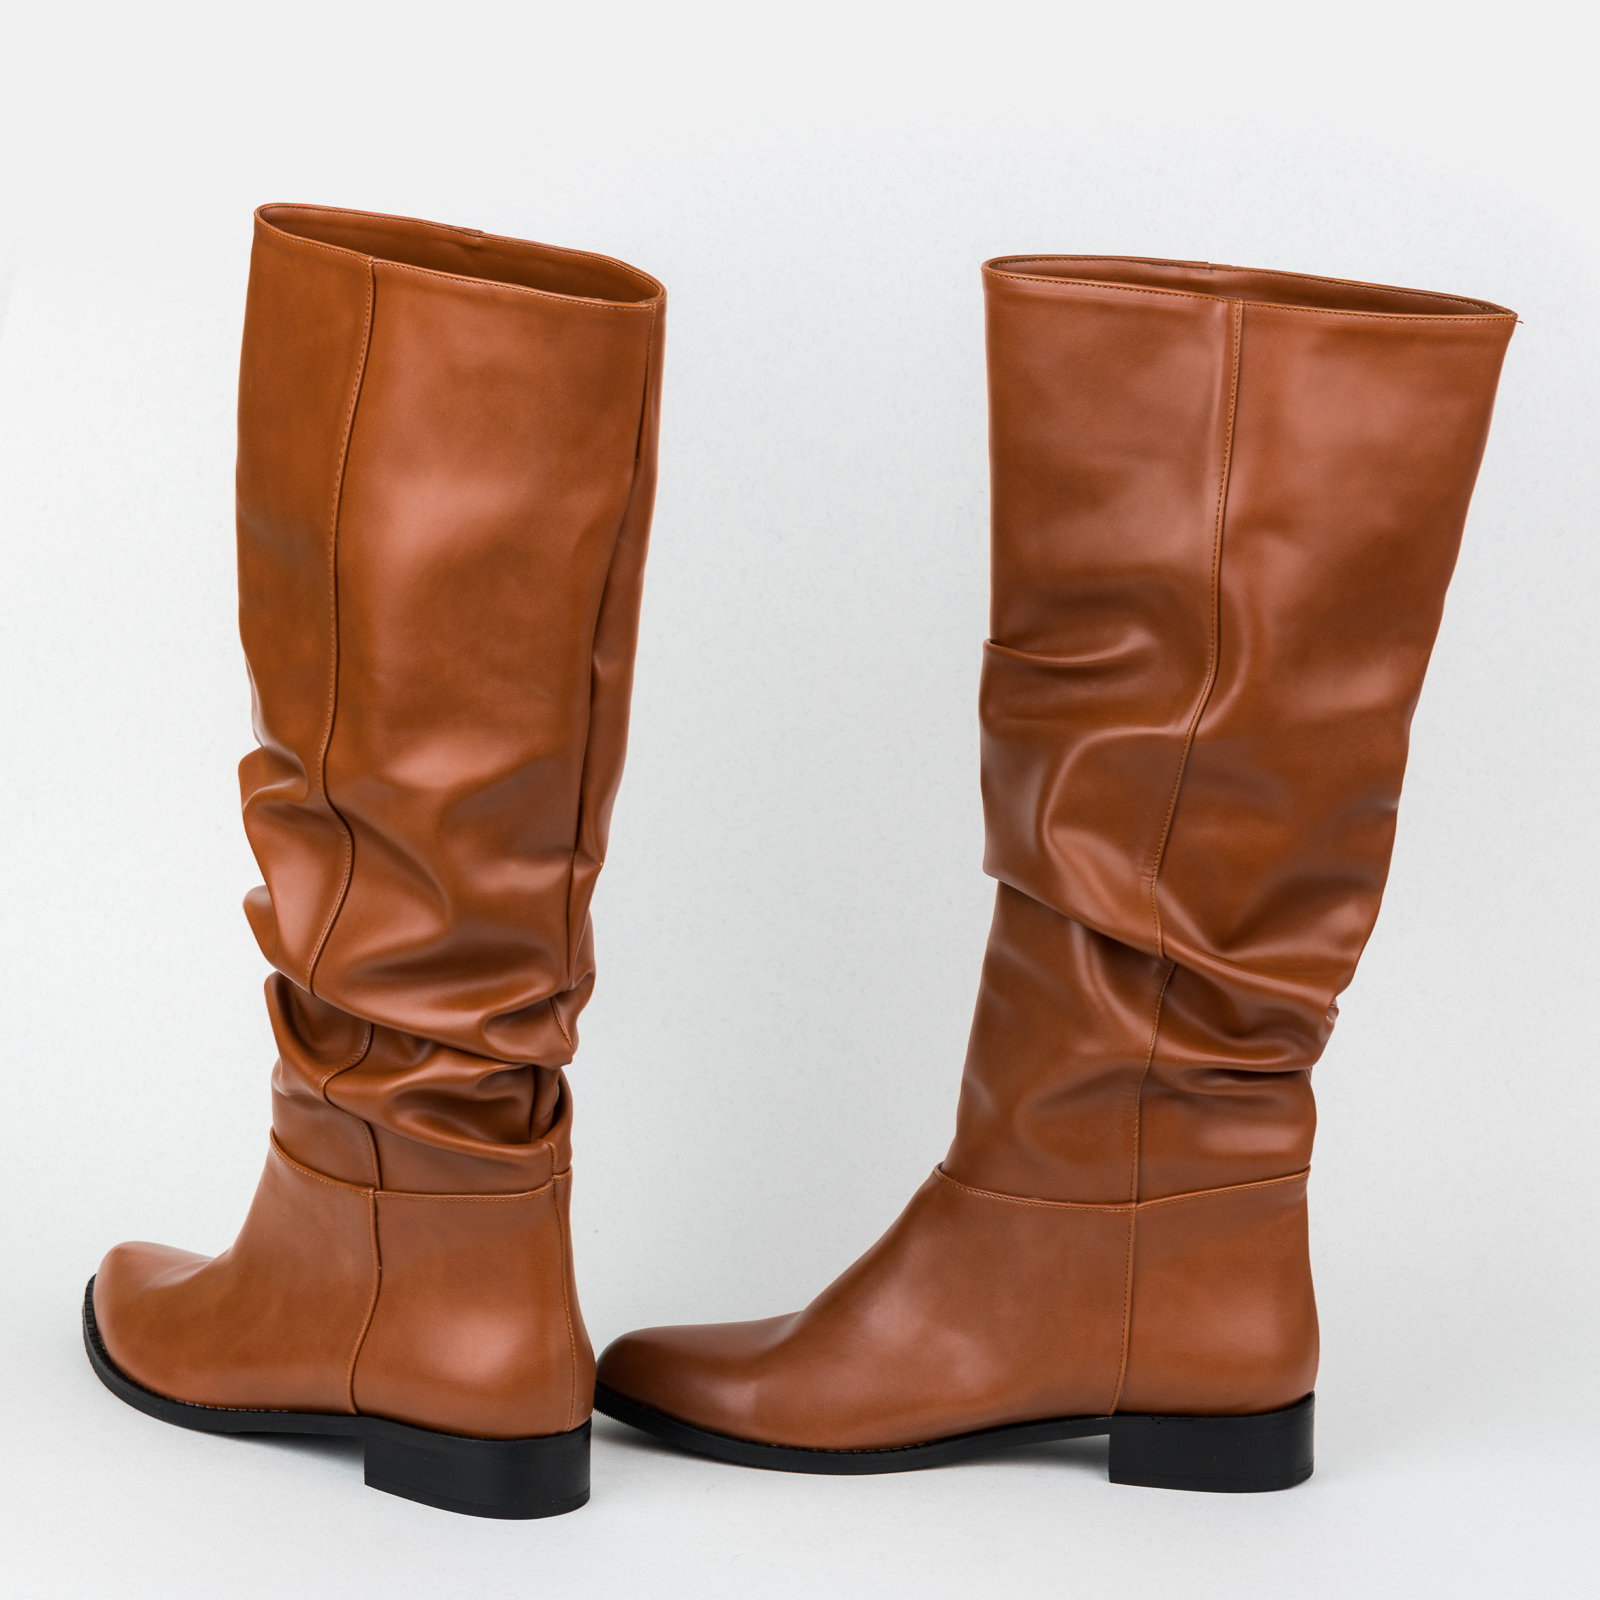 Women boots B507 - BROWN